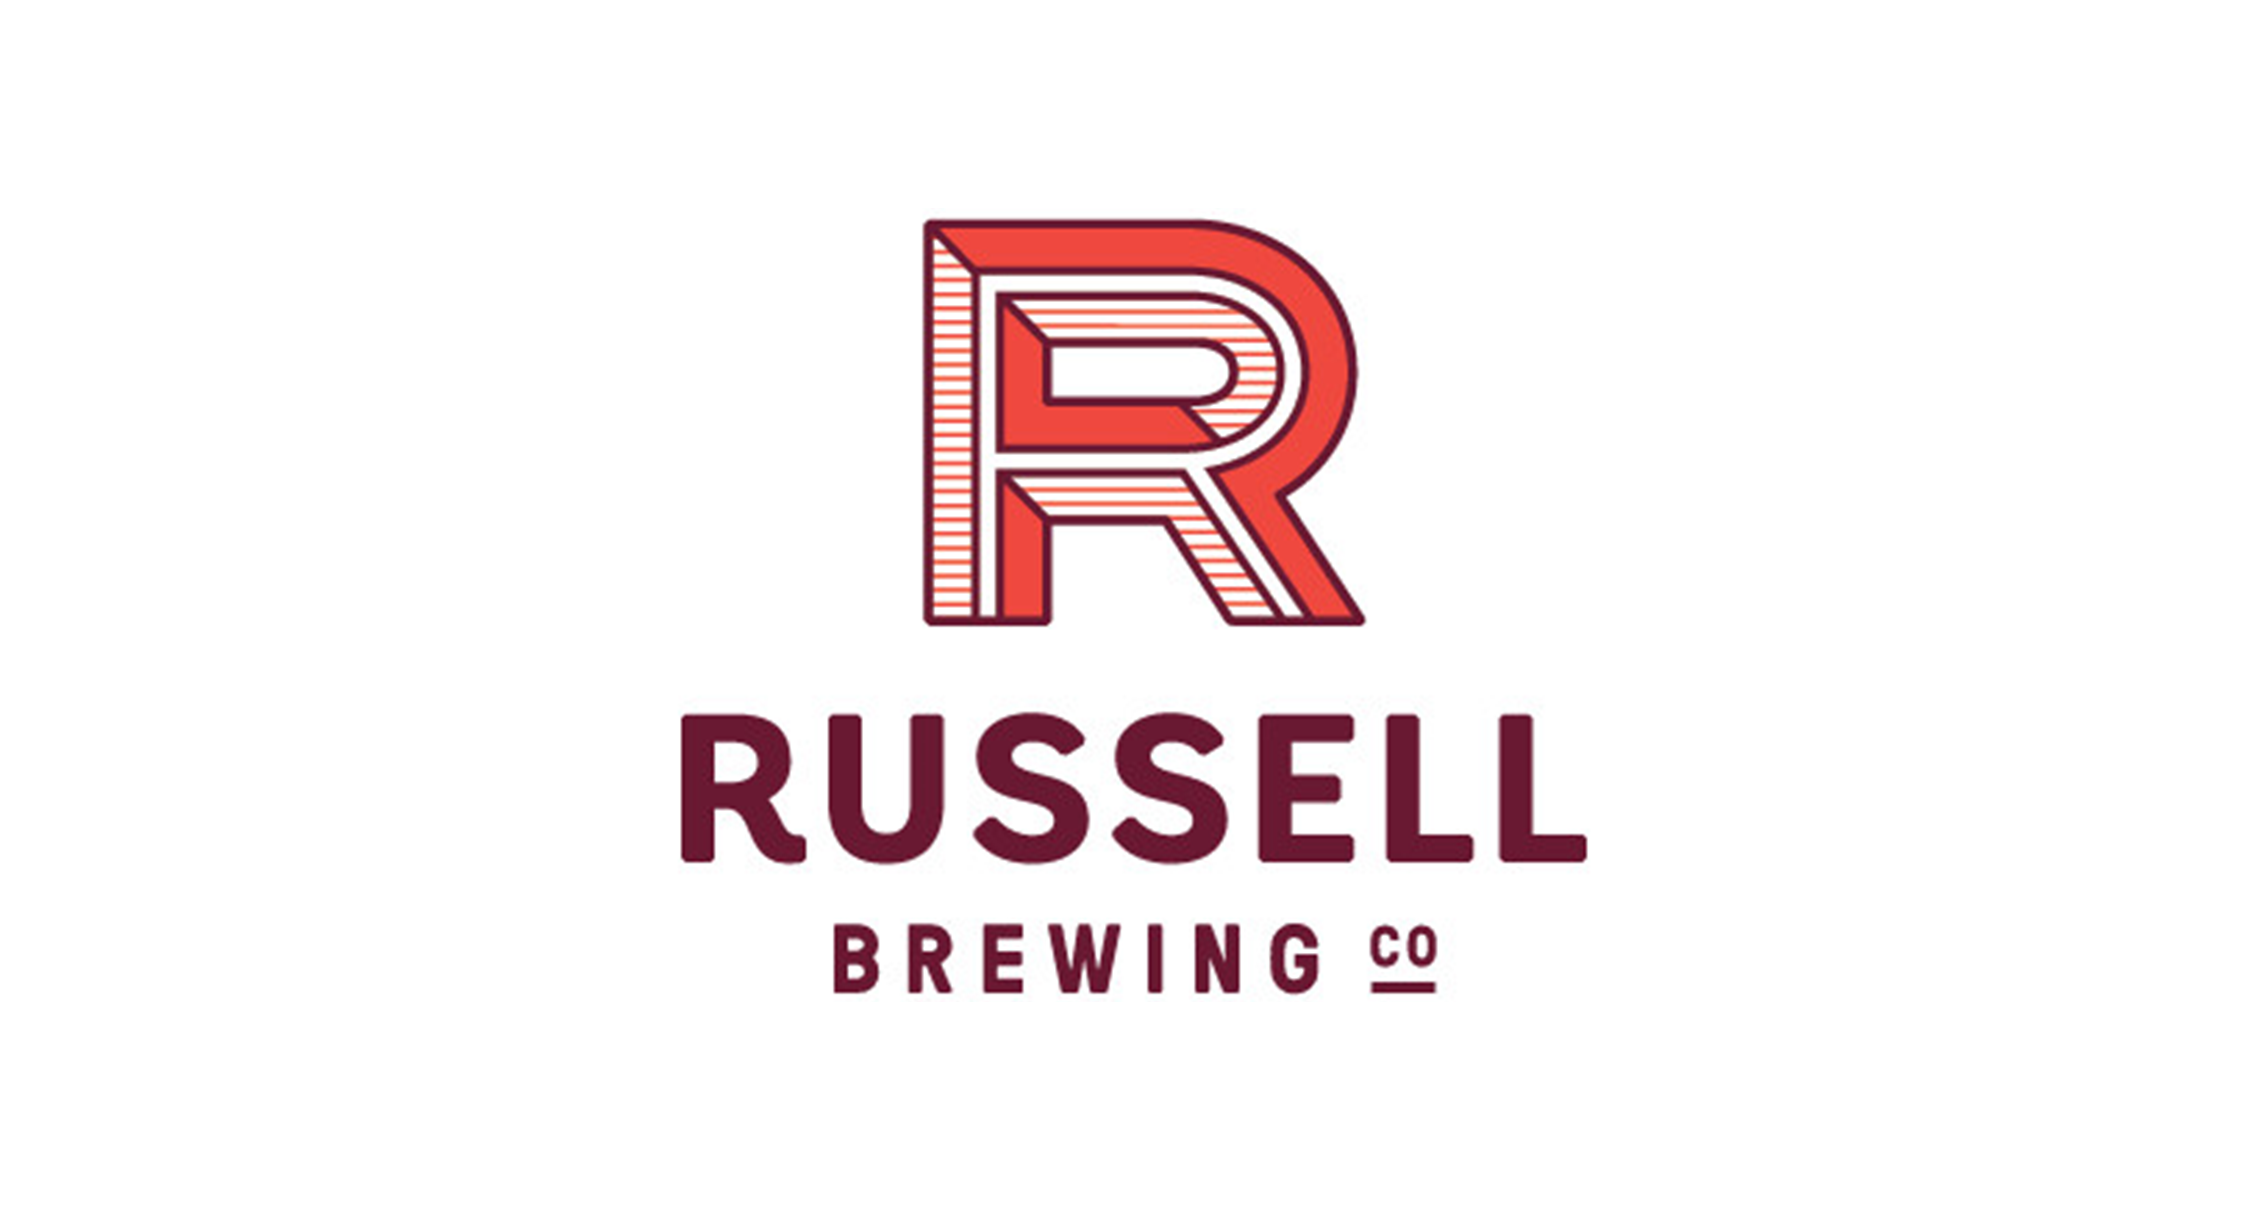 罗塞尔精酿 Russell Brewing